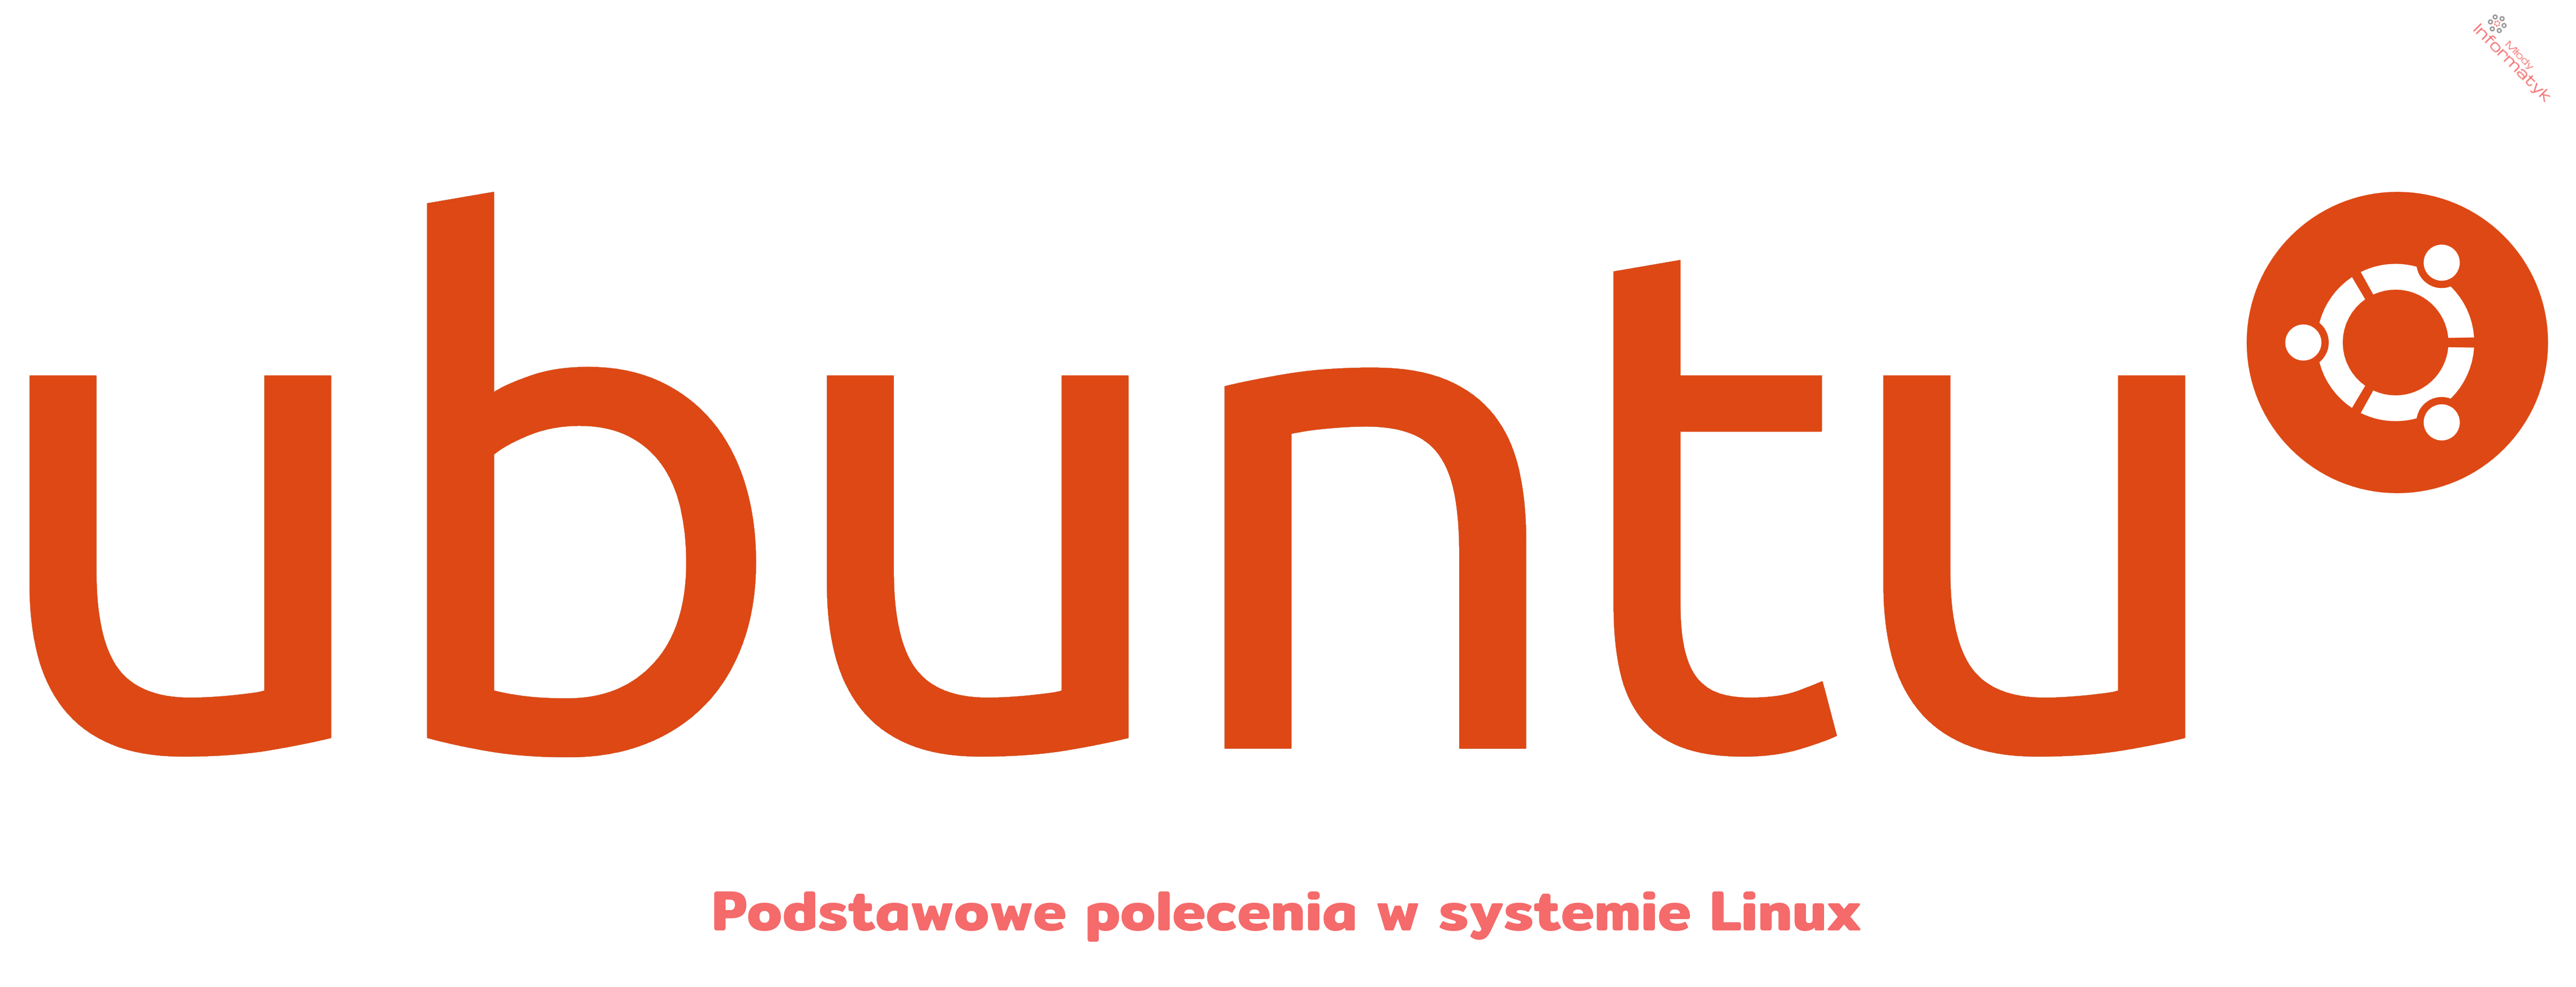 Podstawowe polecenia w systemie Linux